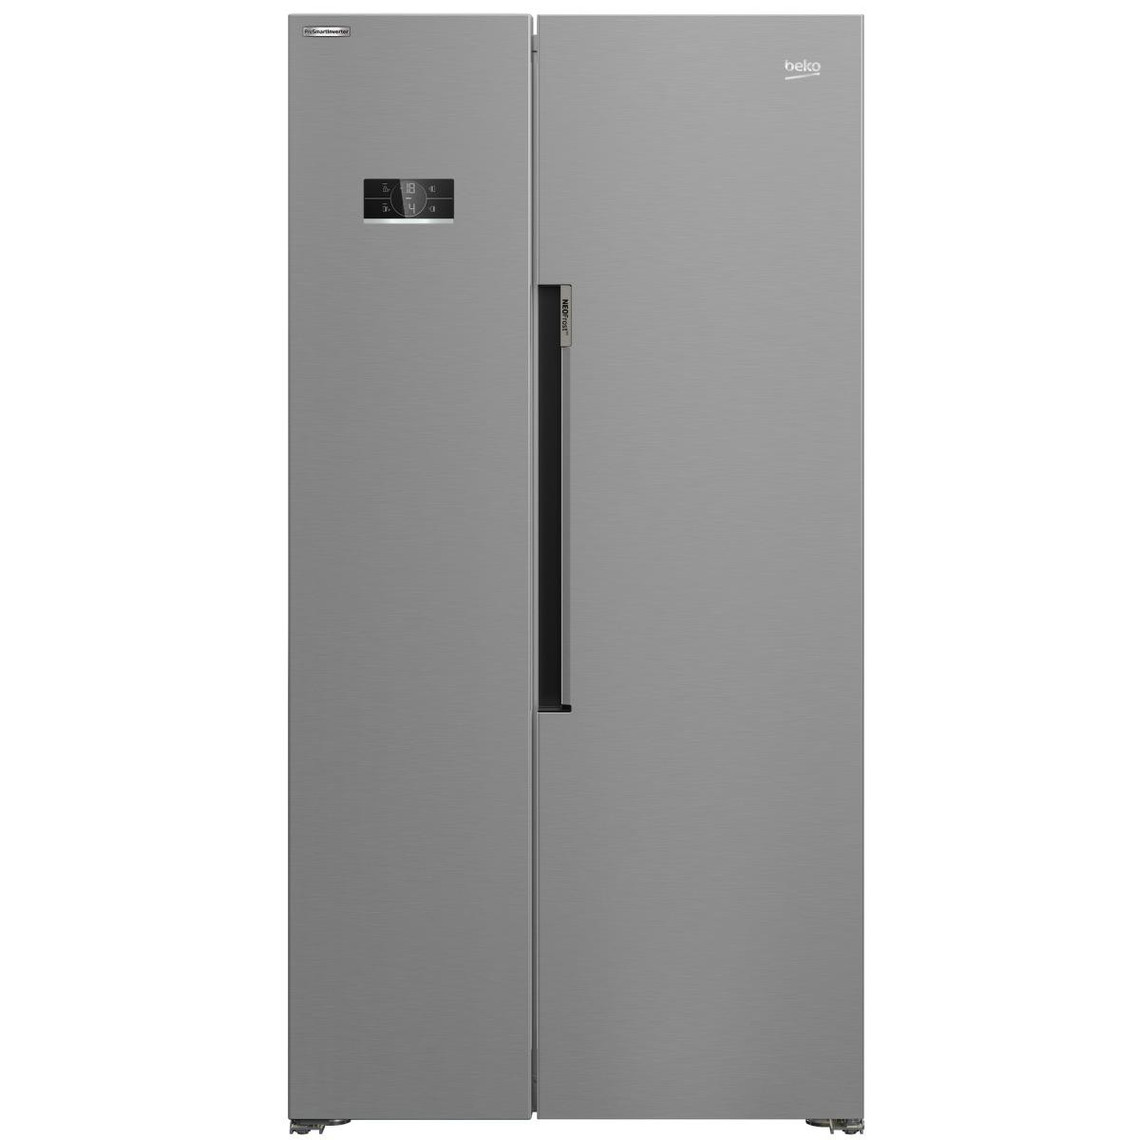 Beko Beko GN1603140XBN side-by-side refrigerator